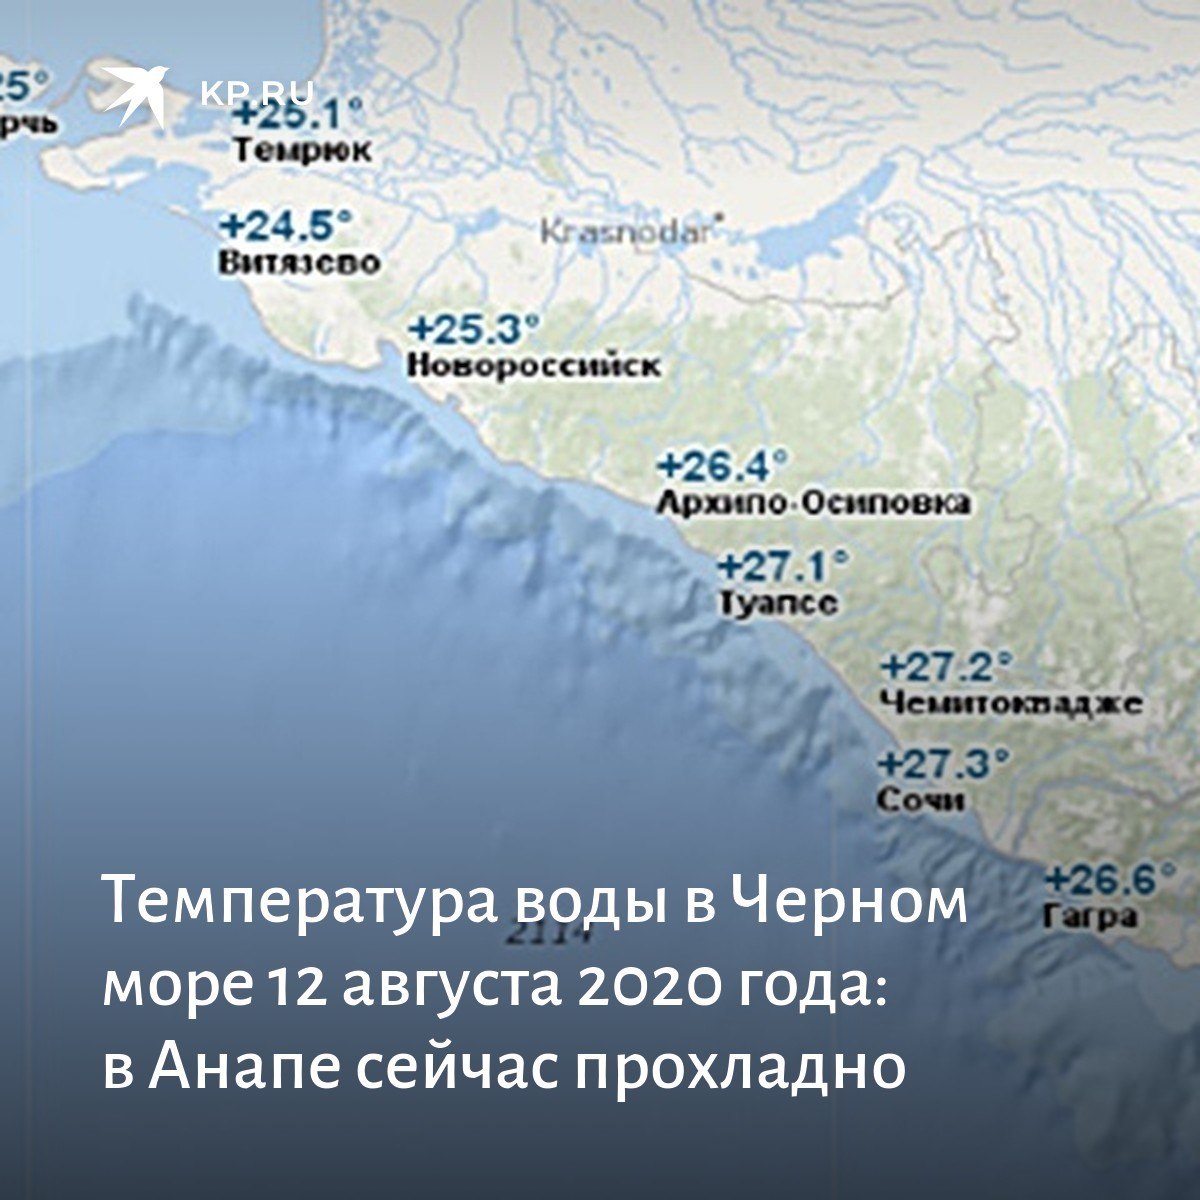 Сколько протяженность сочи в километрах. Черное море Сочи. Температурная карта Черноморского побережья. Туапсе побережье черного моря. Глубина моря в районе Сочи.